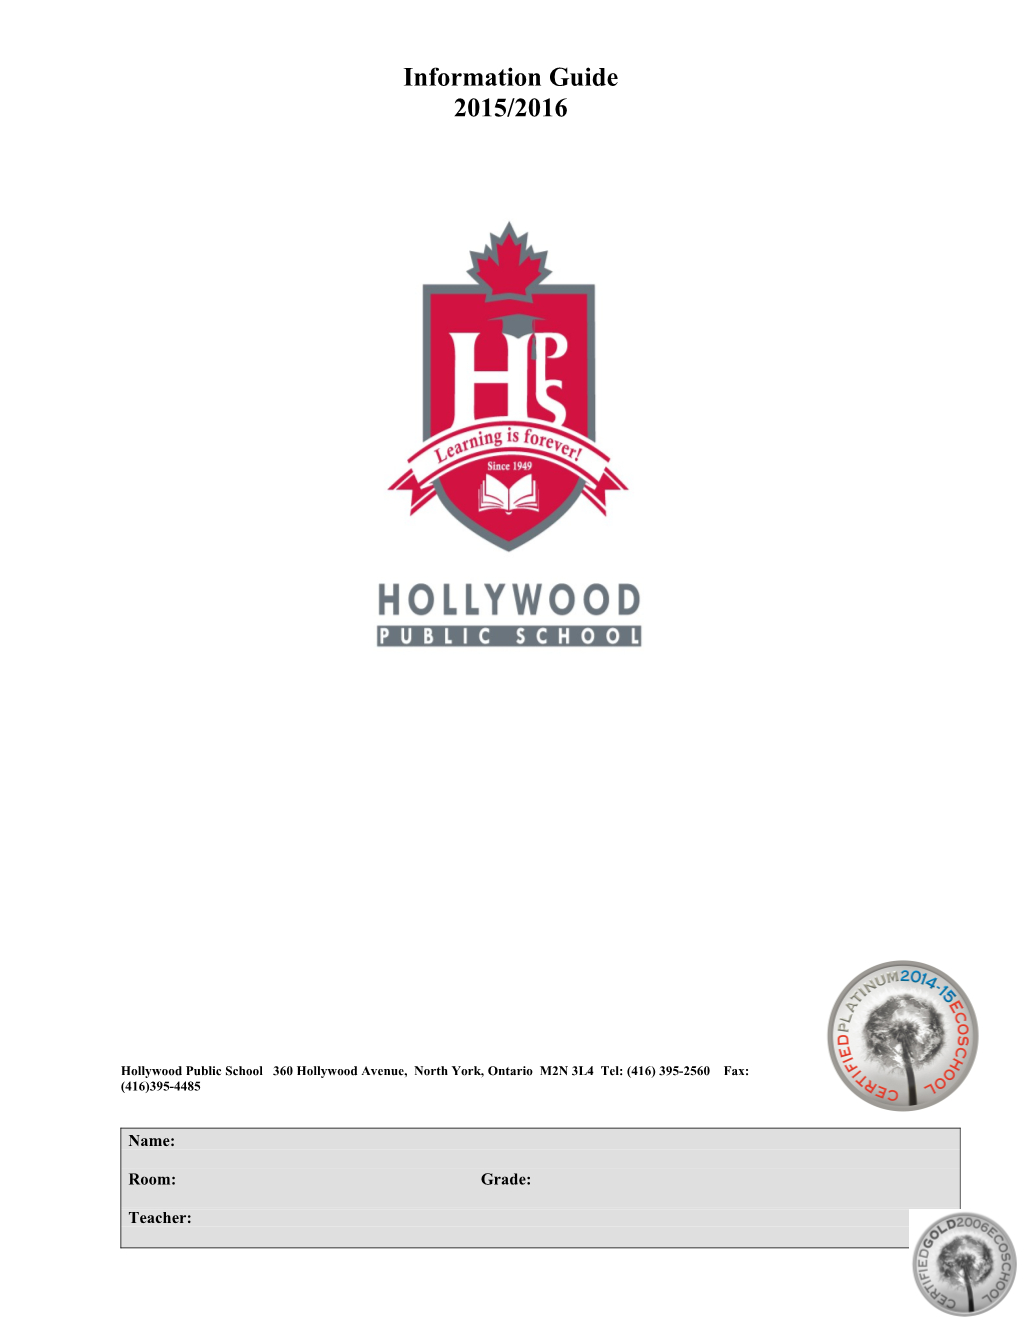 Hollywood Public School 360 Hollywood Avenue, North York, Ontario M2N 3L4 Tel: (416) 395-2560